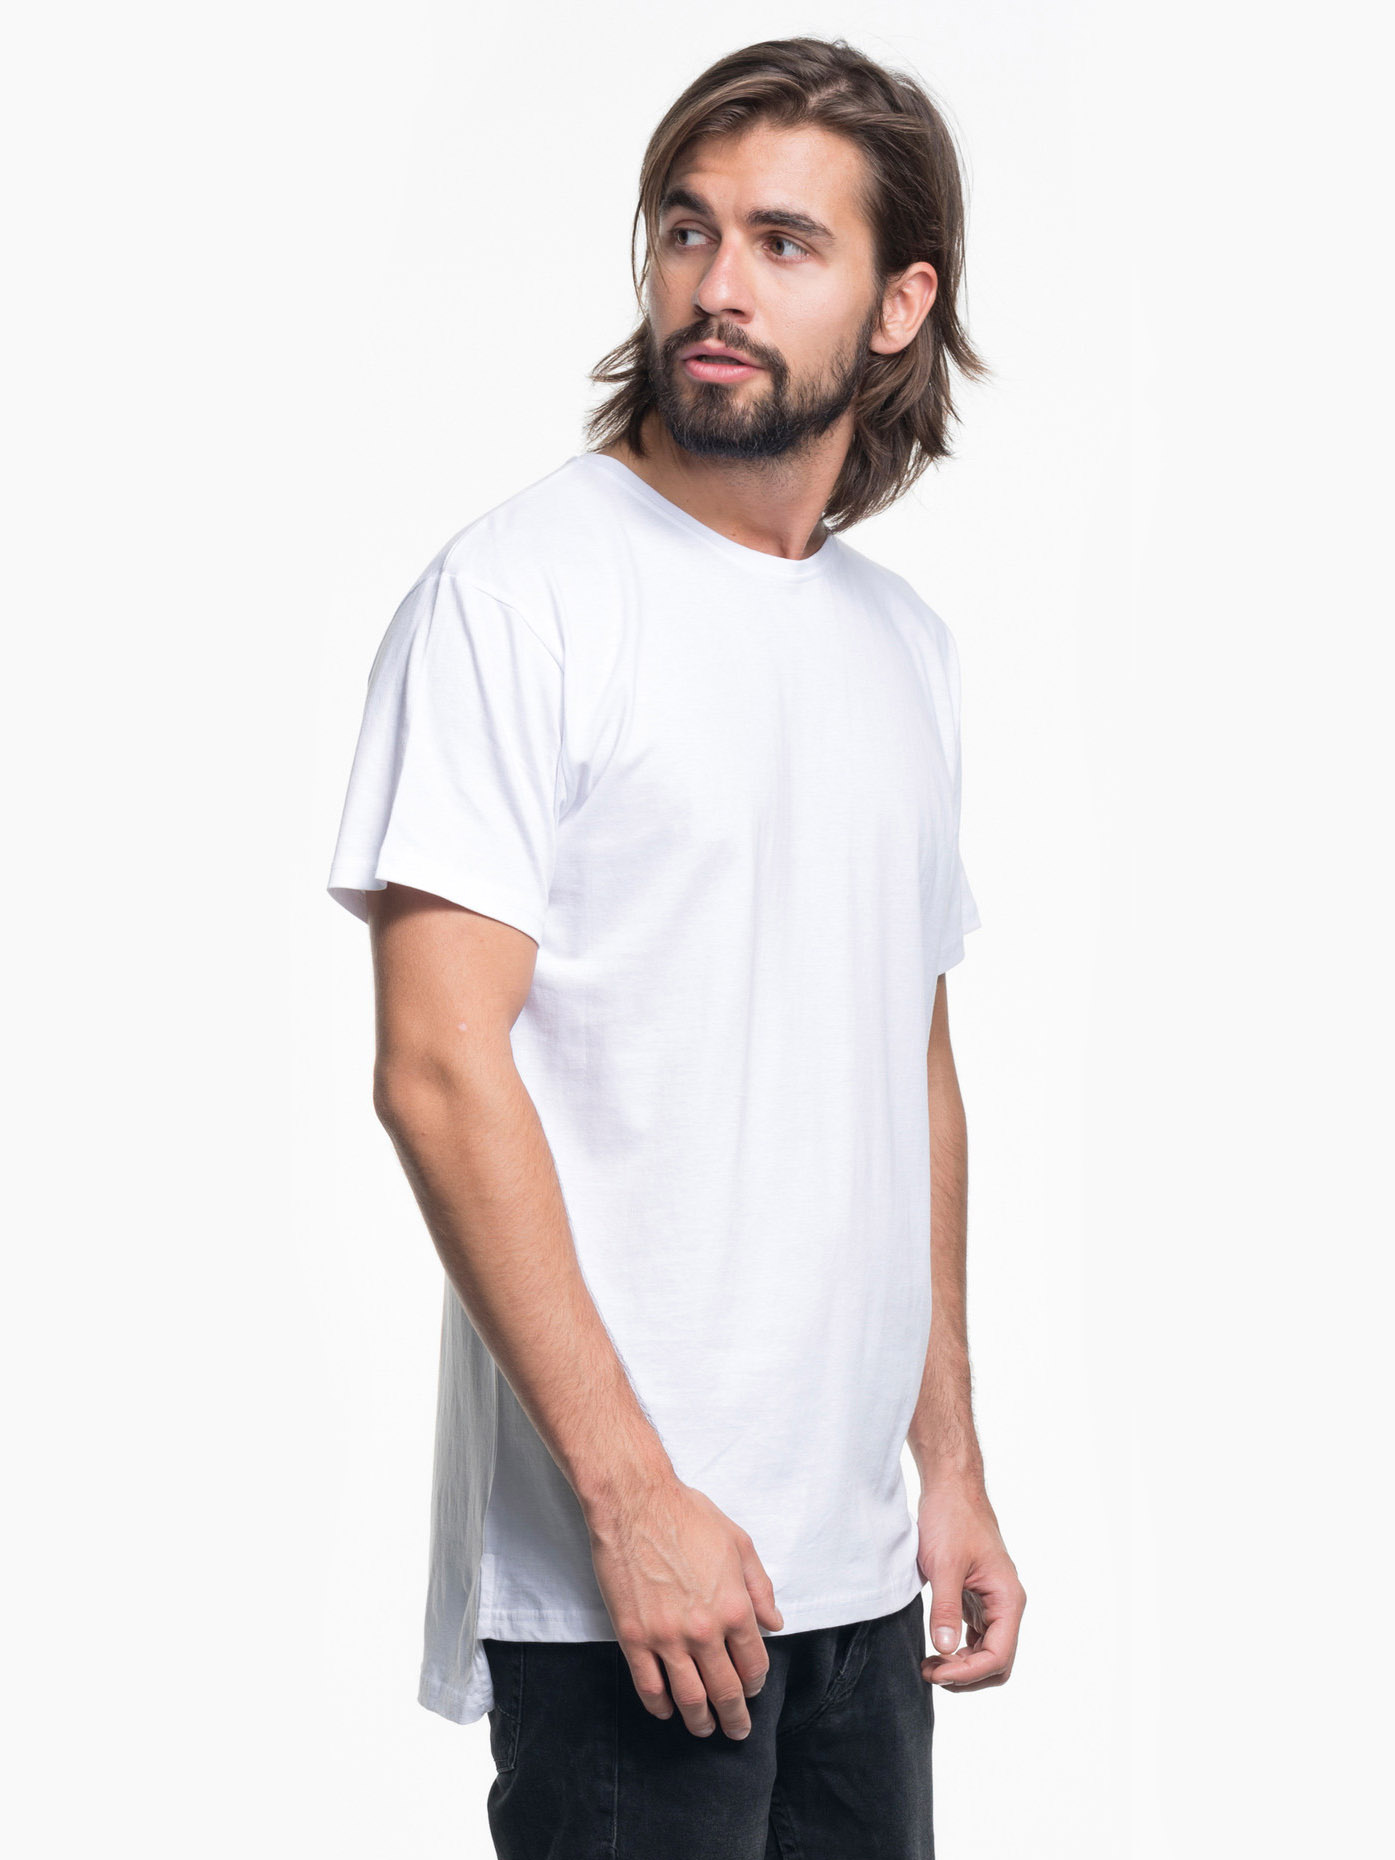 Мужская футболка с удлиненной спиной Promostars 25500 Men Extend